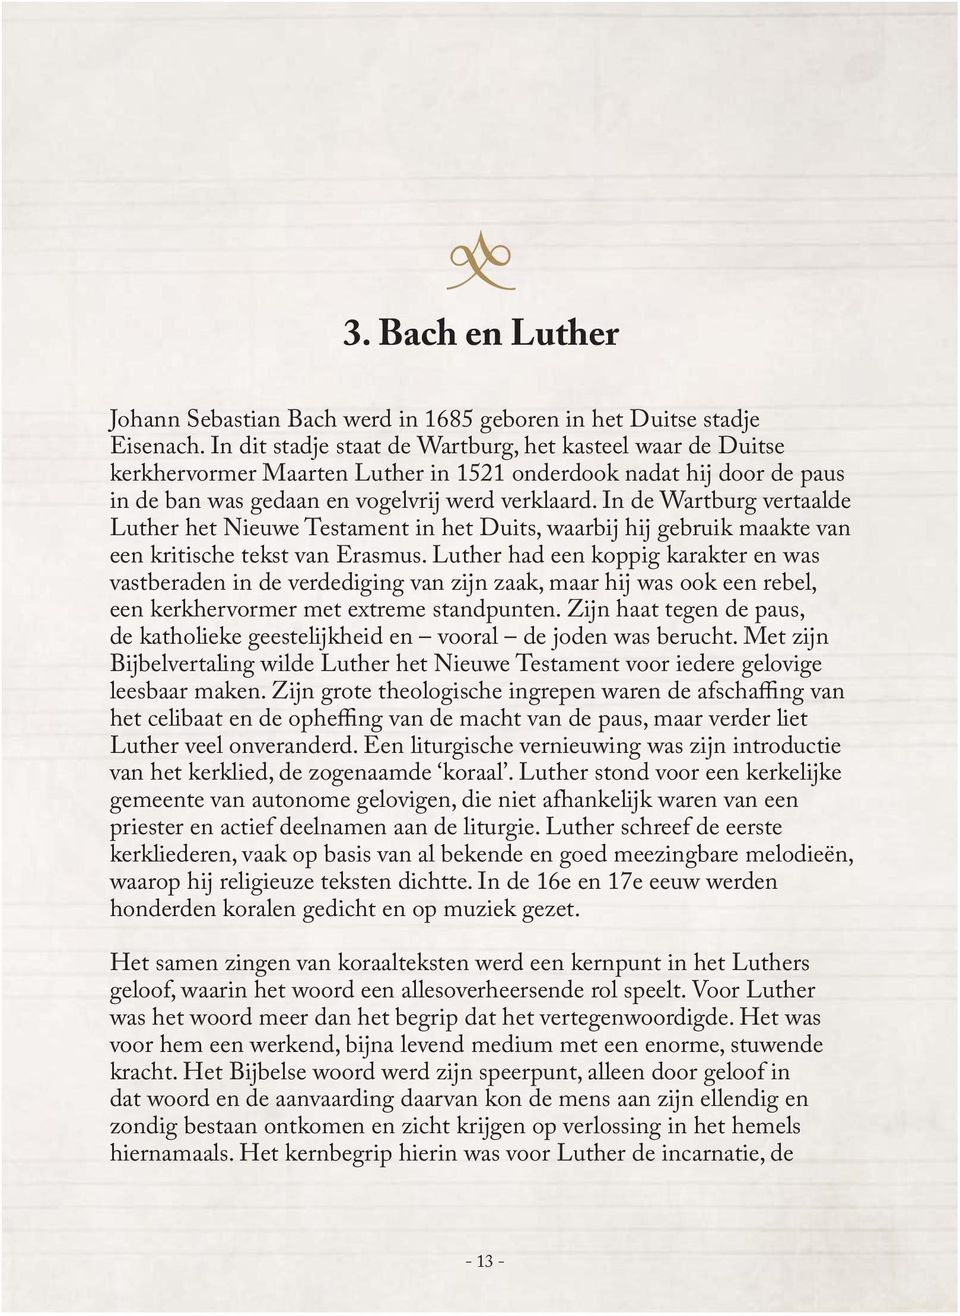 In de Wartburg vertaalde Luther het Nieuwe Testament in het Duits, waarbij hij gebruik maakte van een kritische tekst van Erasmus.